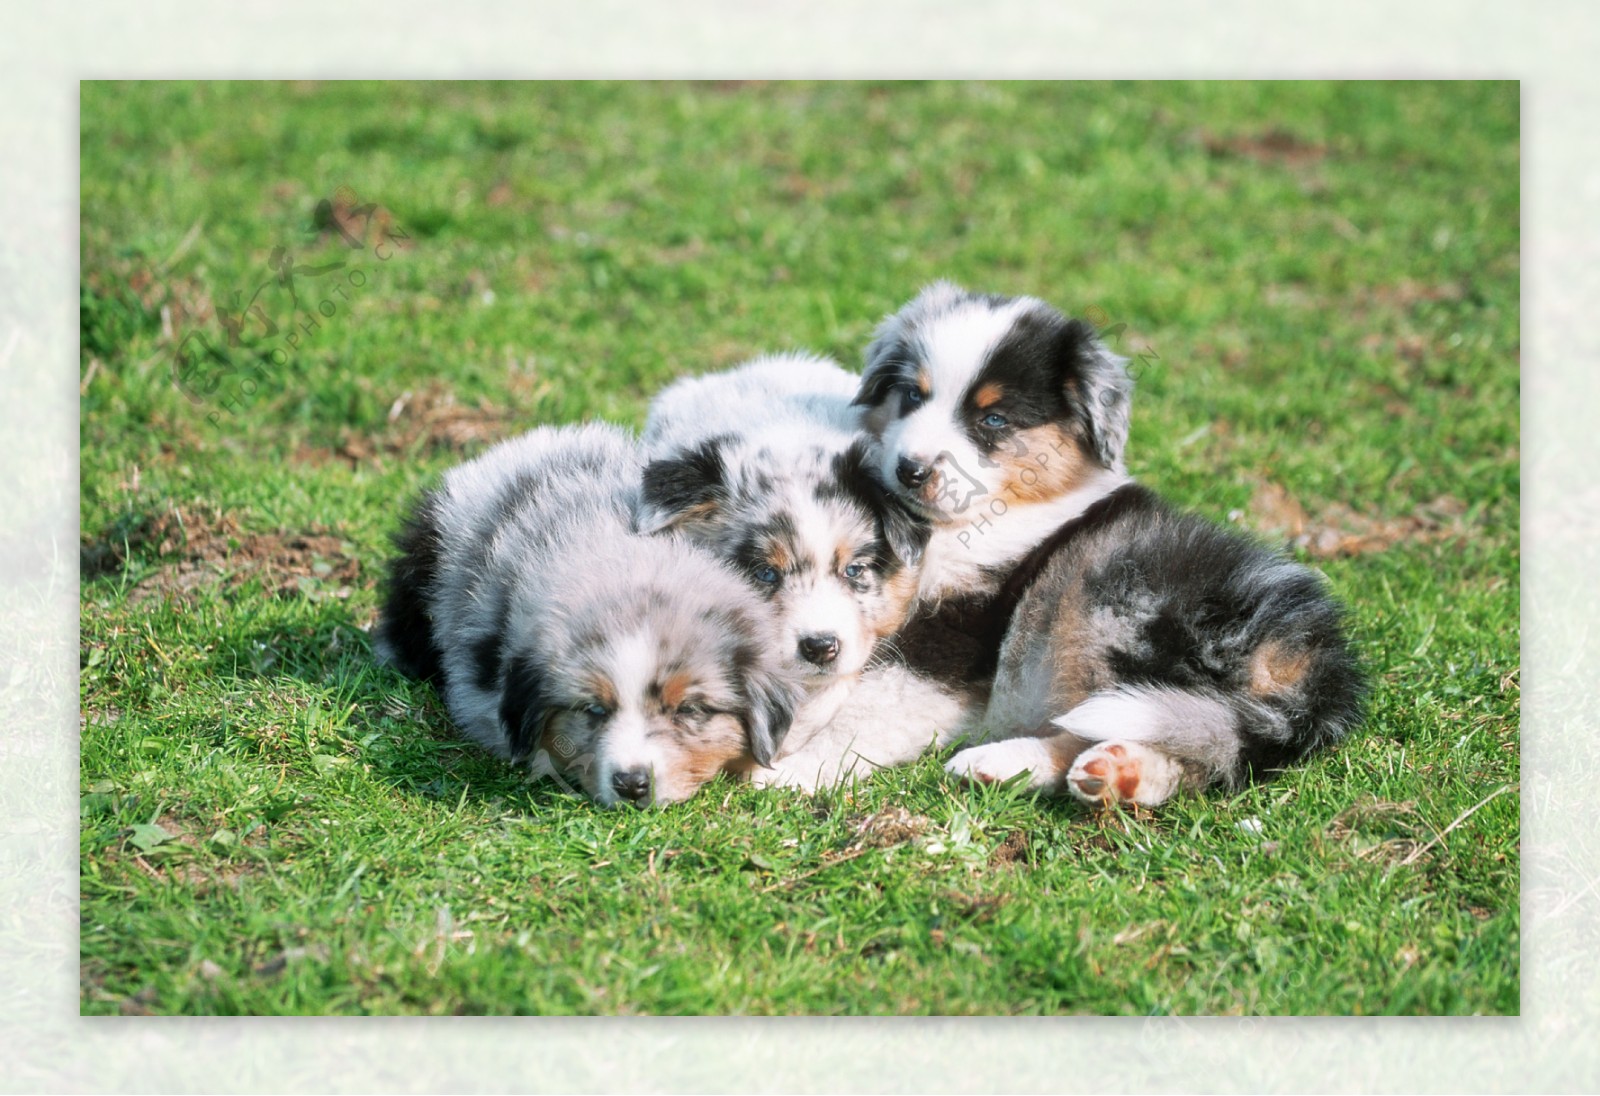 三个趴在草地上的小狗